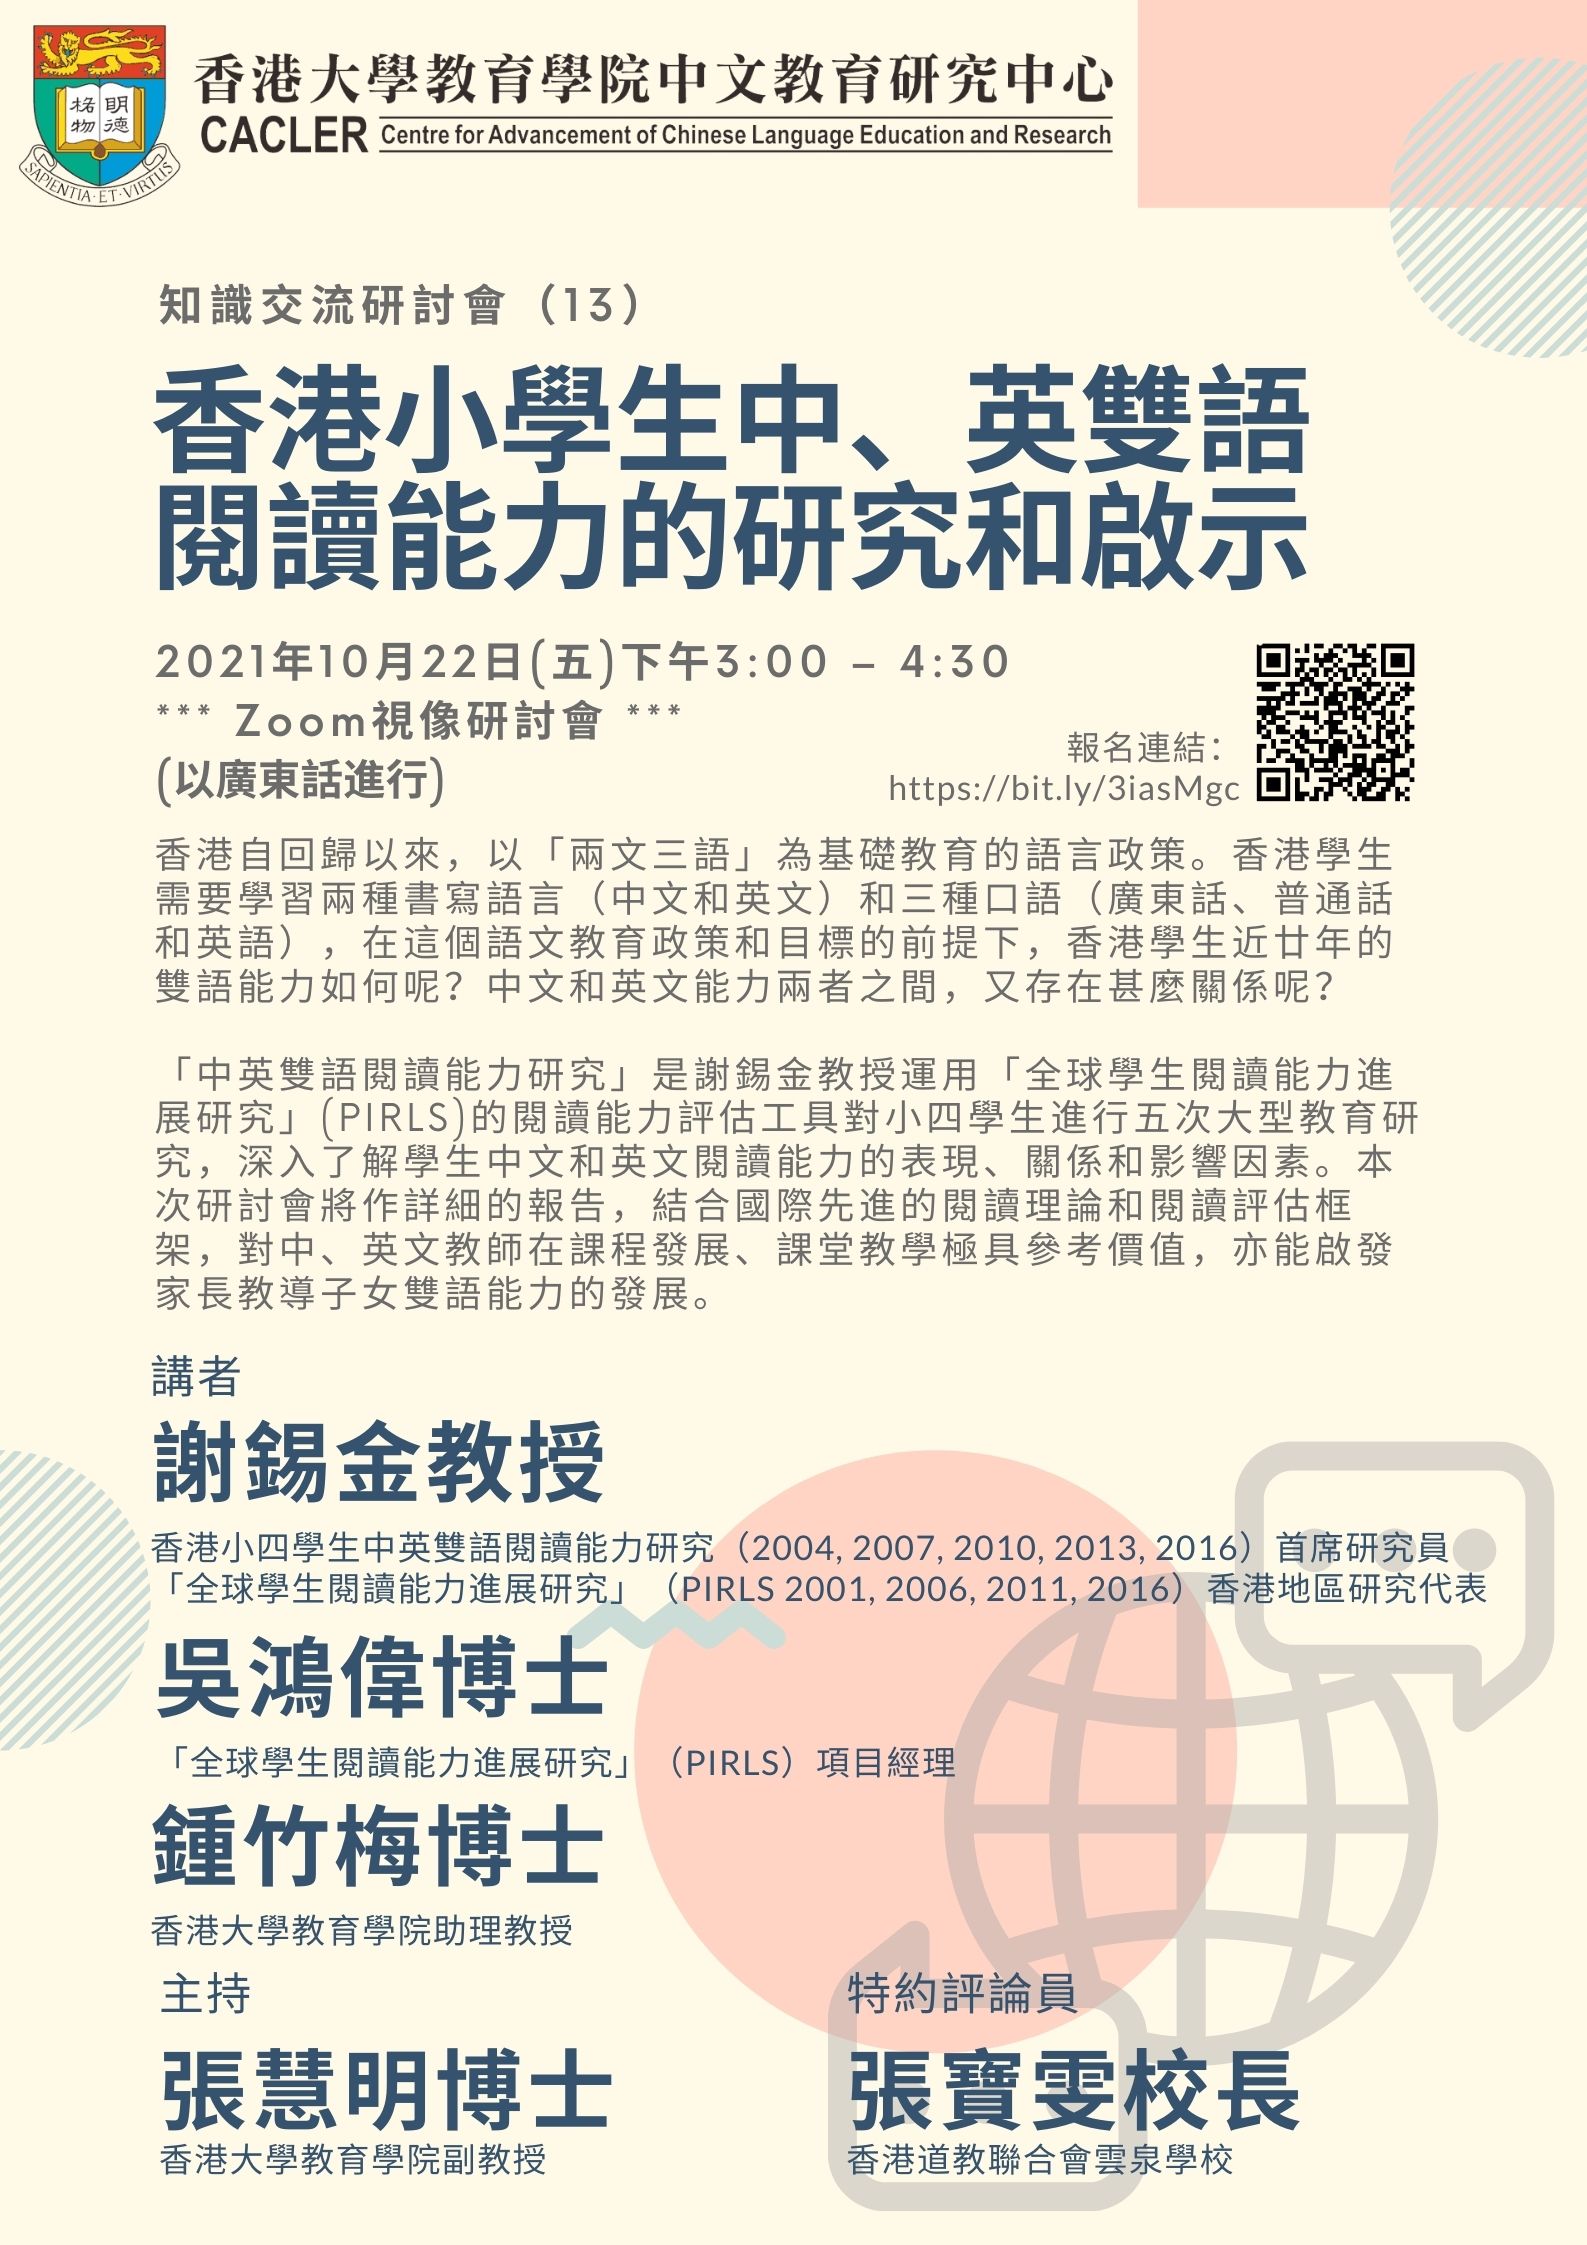 知識交流研討會（13）PIRLS 系列：香港小學生中、英雙語閱讀能力的研究和啟示 title